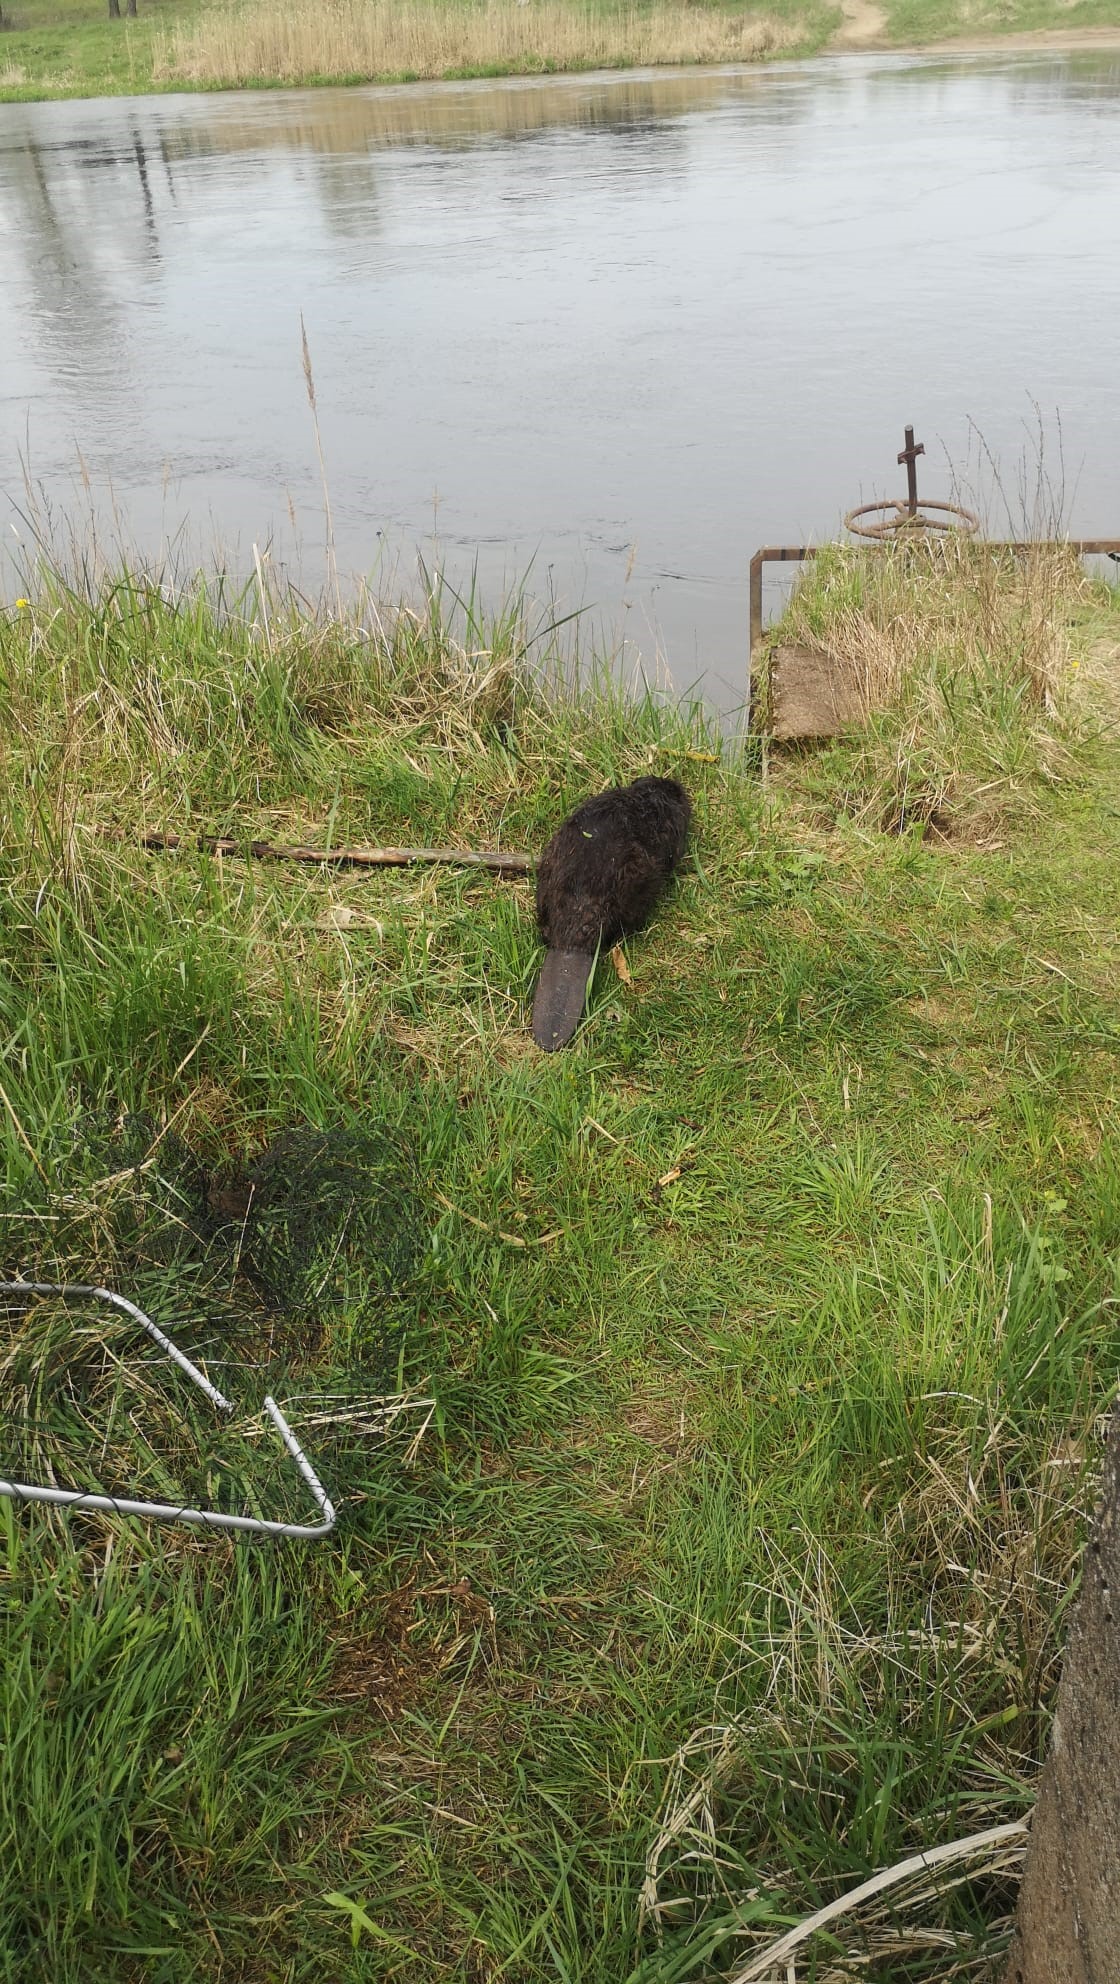 Zdjęcie przedstawia uwolnionego ze zbiornika bobra, stojącego na brzegu rzeki. Fot. Marek Dobroczyński (Nadleśnictwo Jarocin)